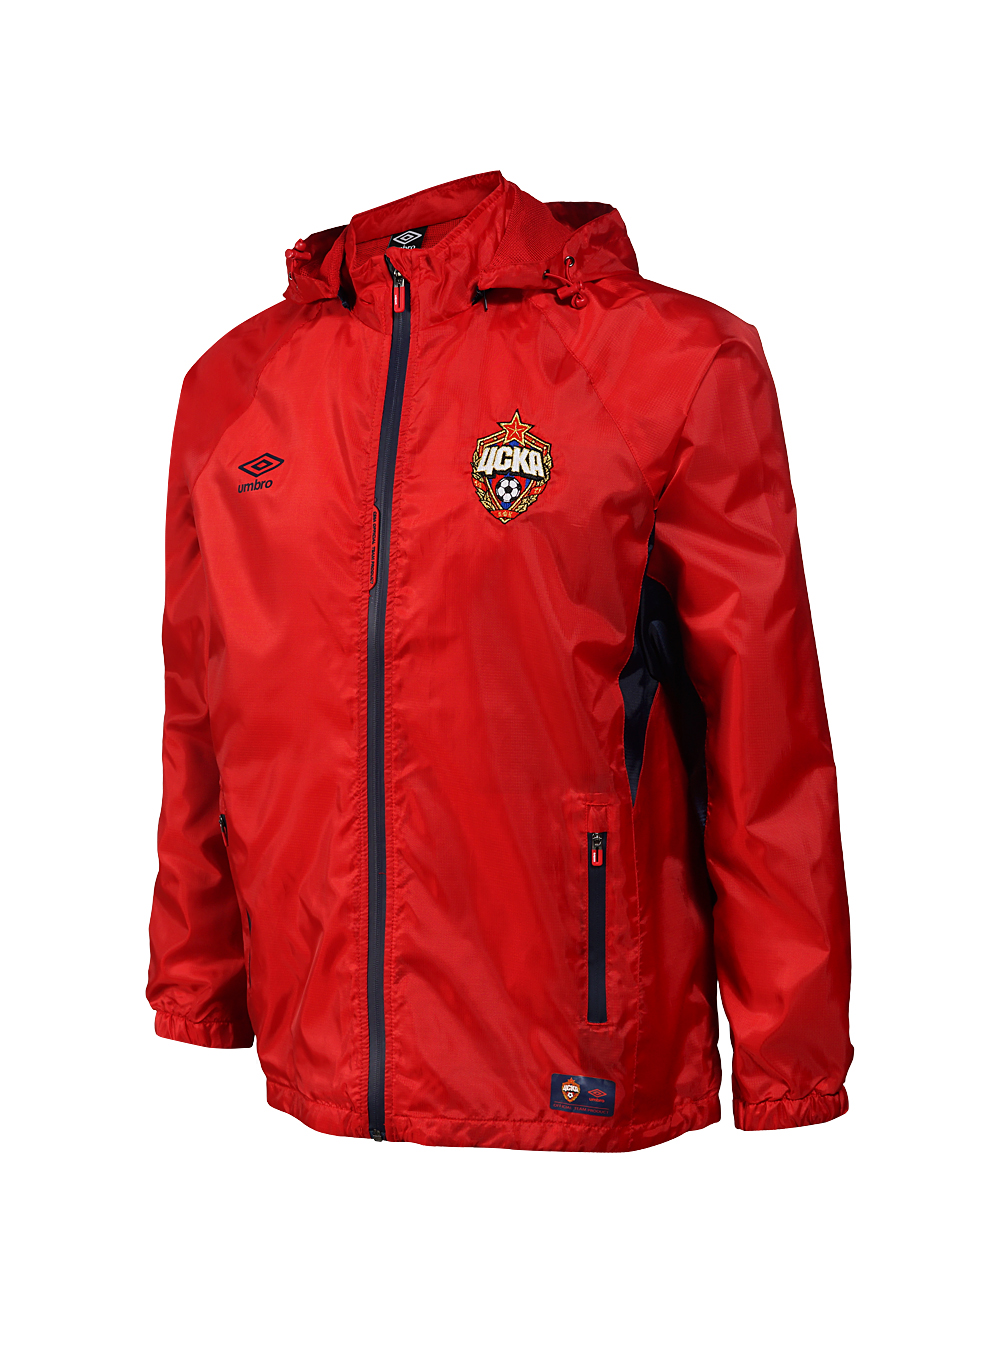 Купить Куртка ветрозащитная красная (XS) по Нижнему Новгороду